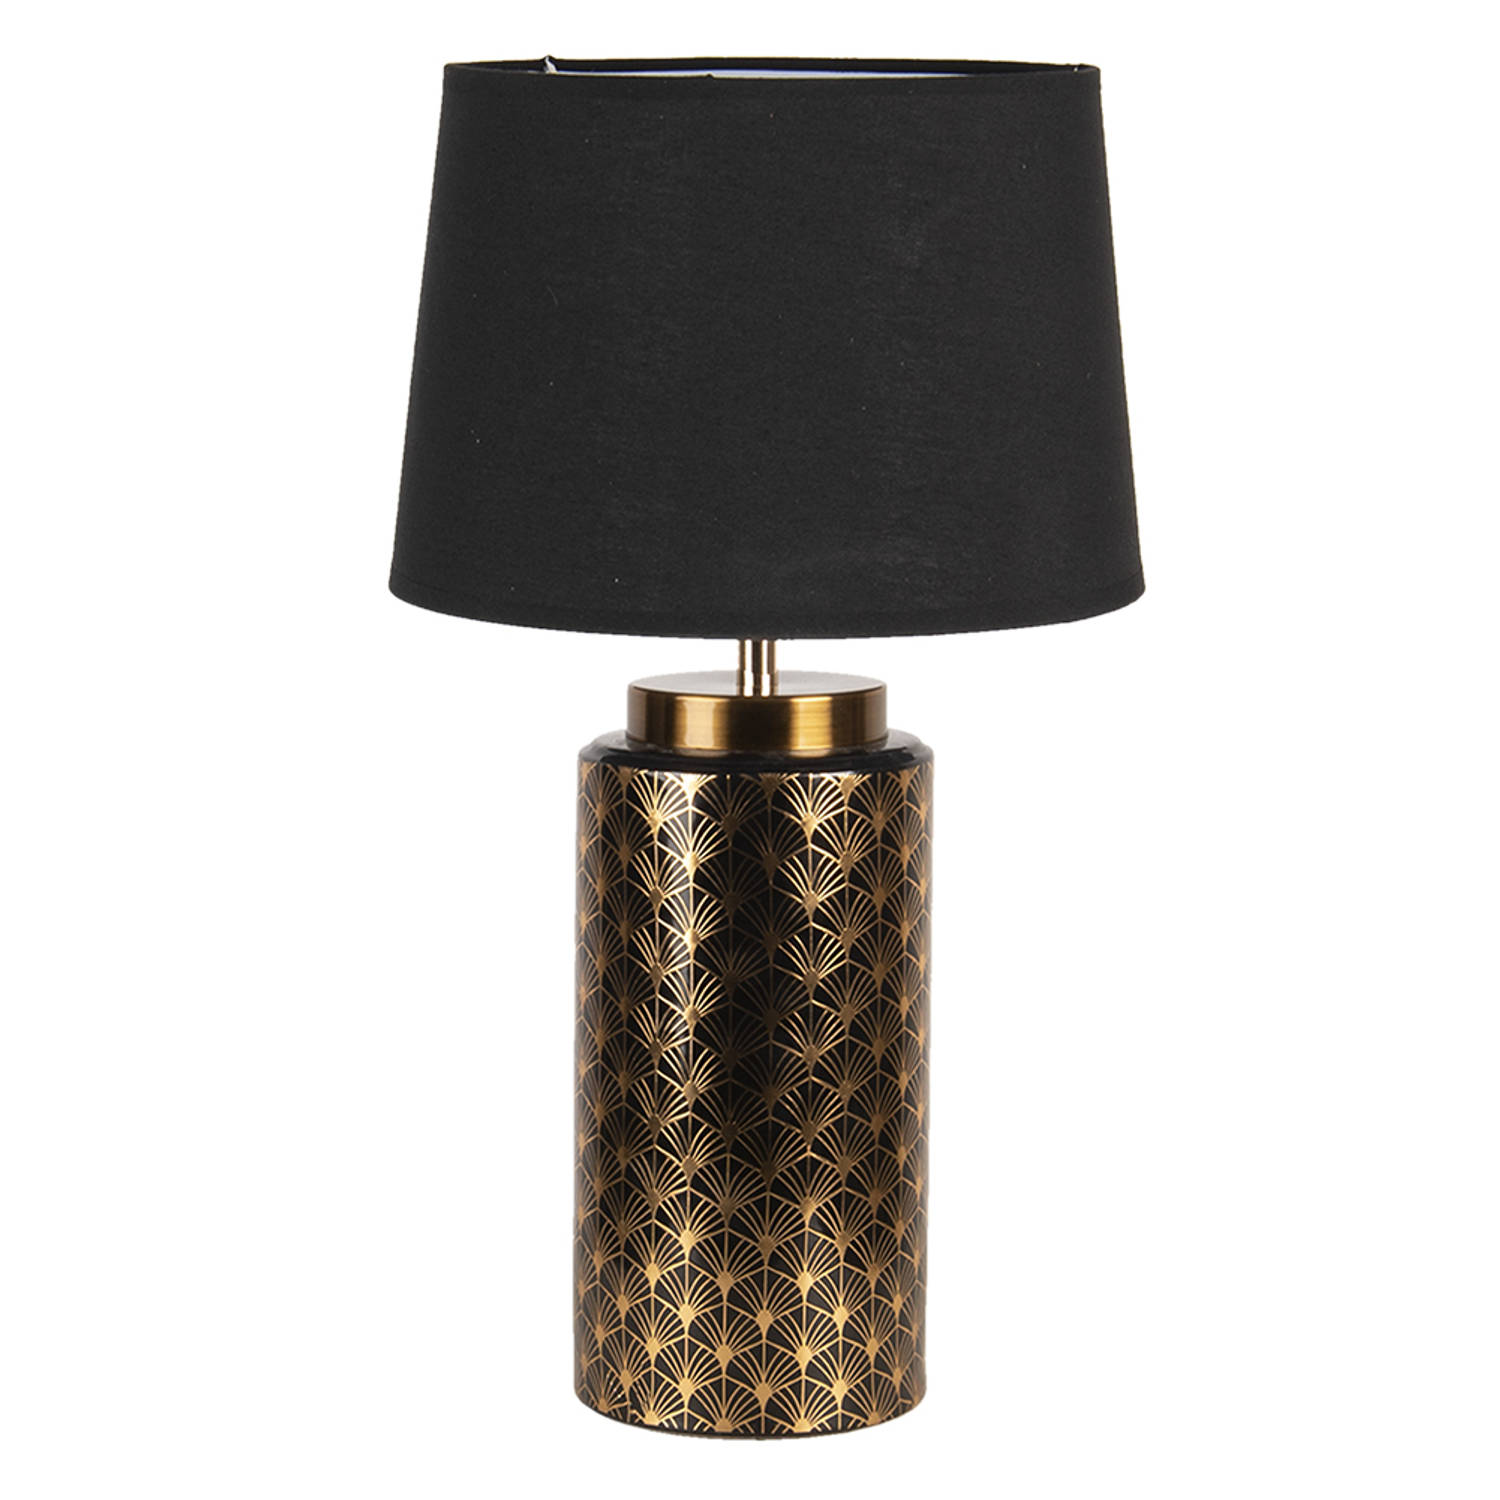 HAES DECO - Tafellamp - Modern Chic - Stijlvolle Lamp, formaat Ø 28x50 cm - Goudkleurig / Zwart Polyresin - Bureaulamp, Sfeerlamp, Nachtlampje